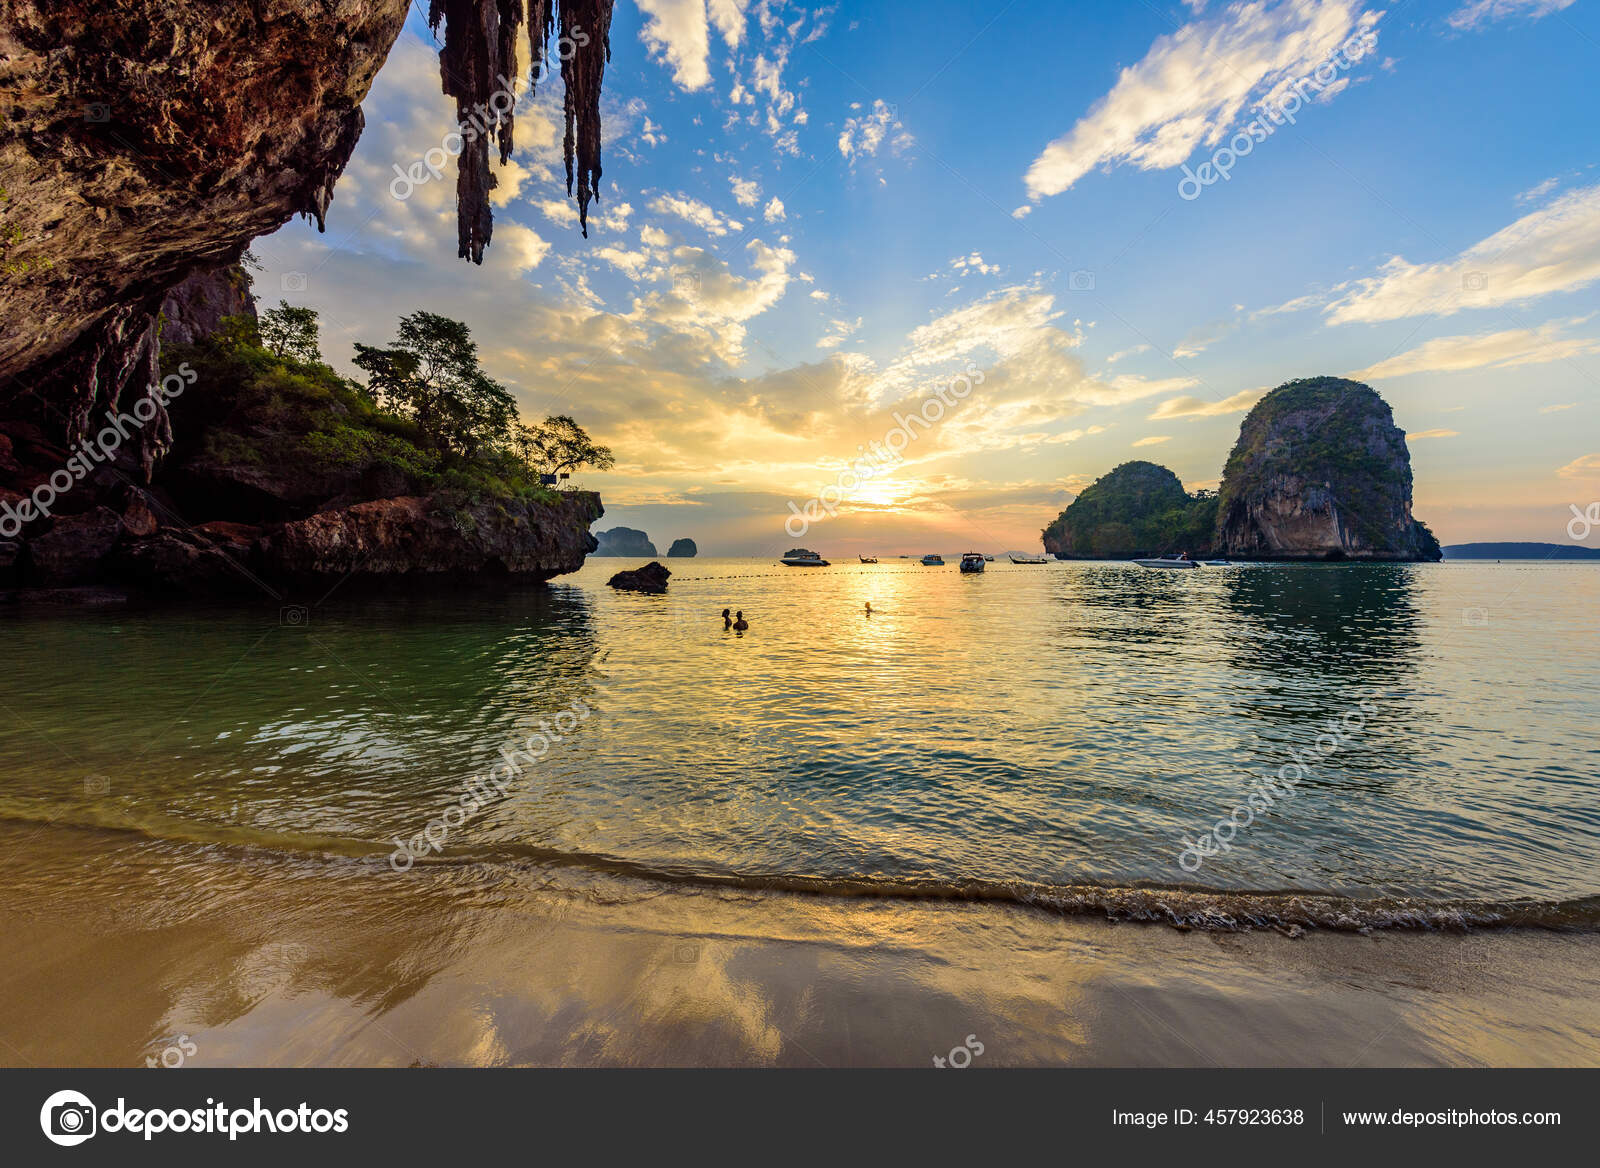 Railay Beach and Phra Nang Cave